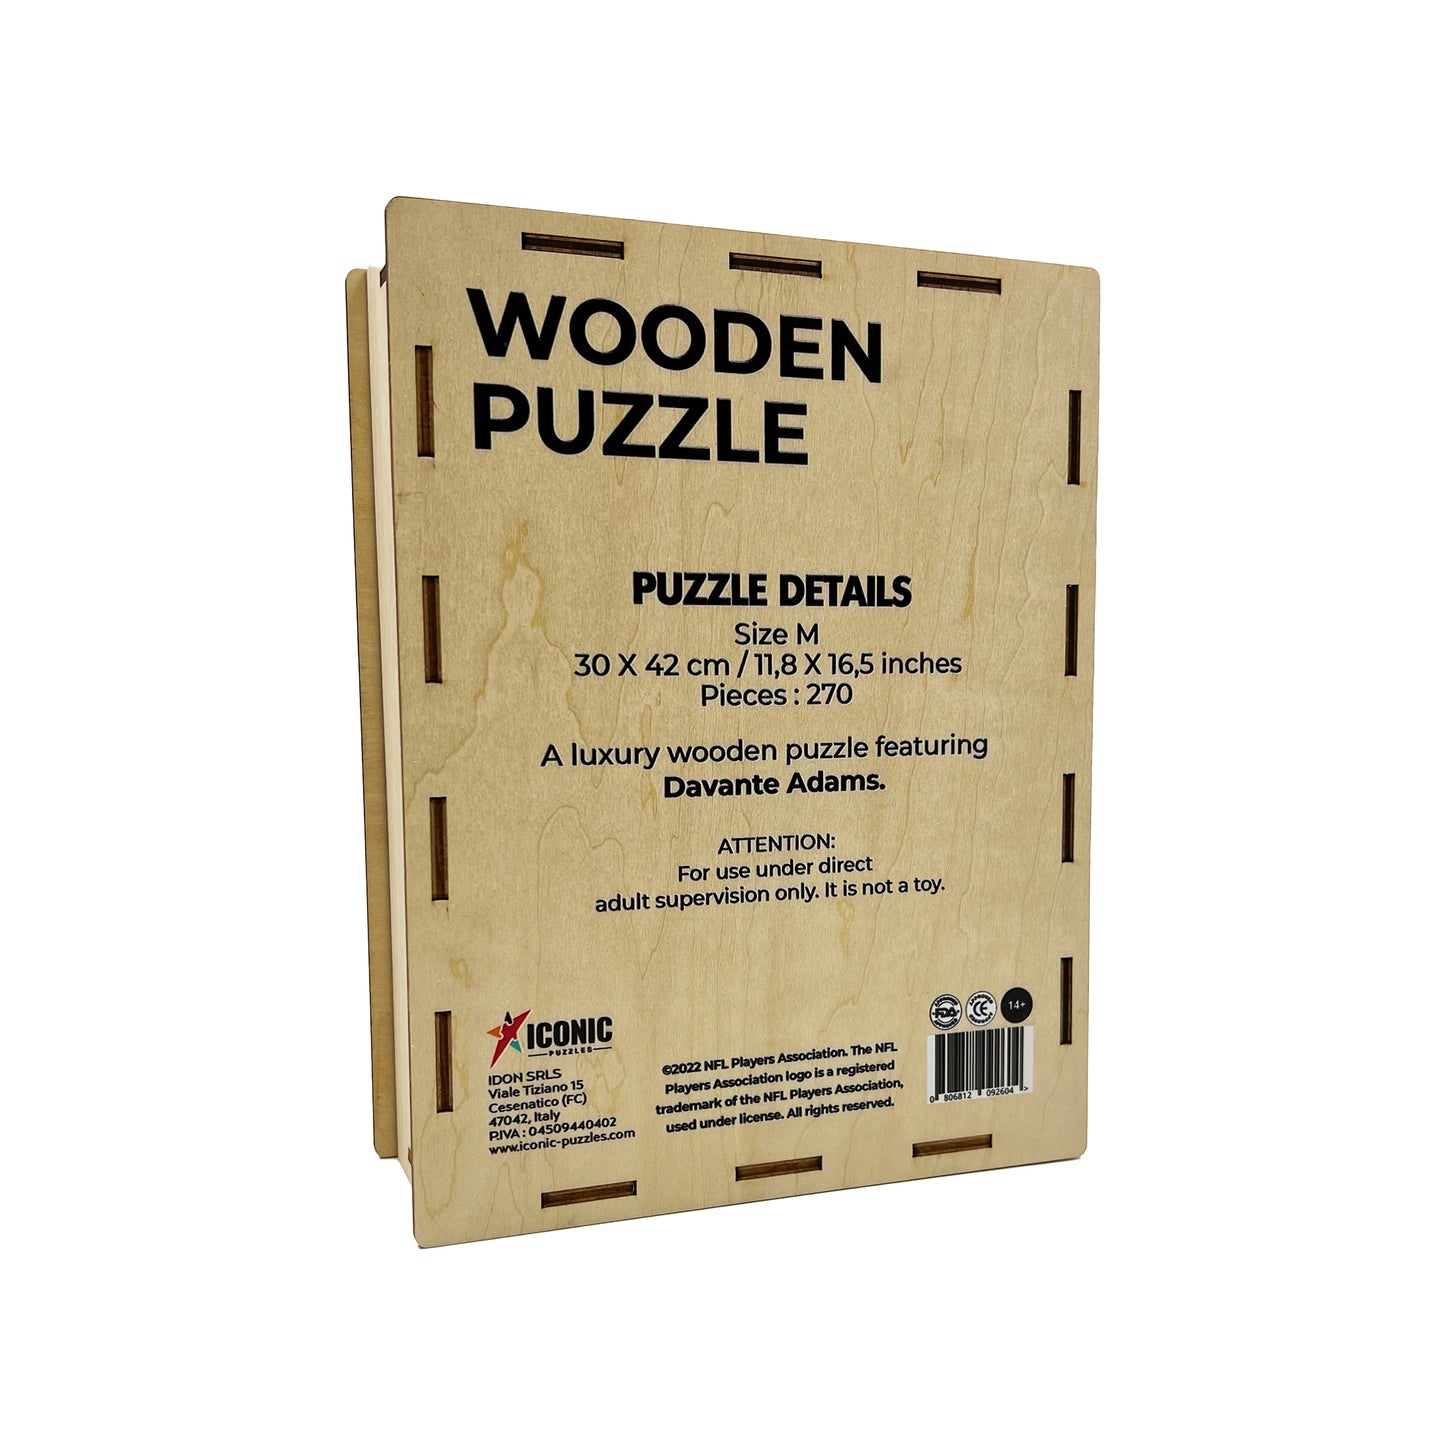 Davante Adams - Wooden Puzzle